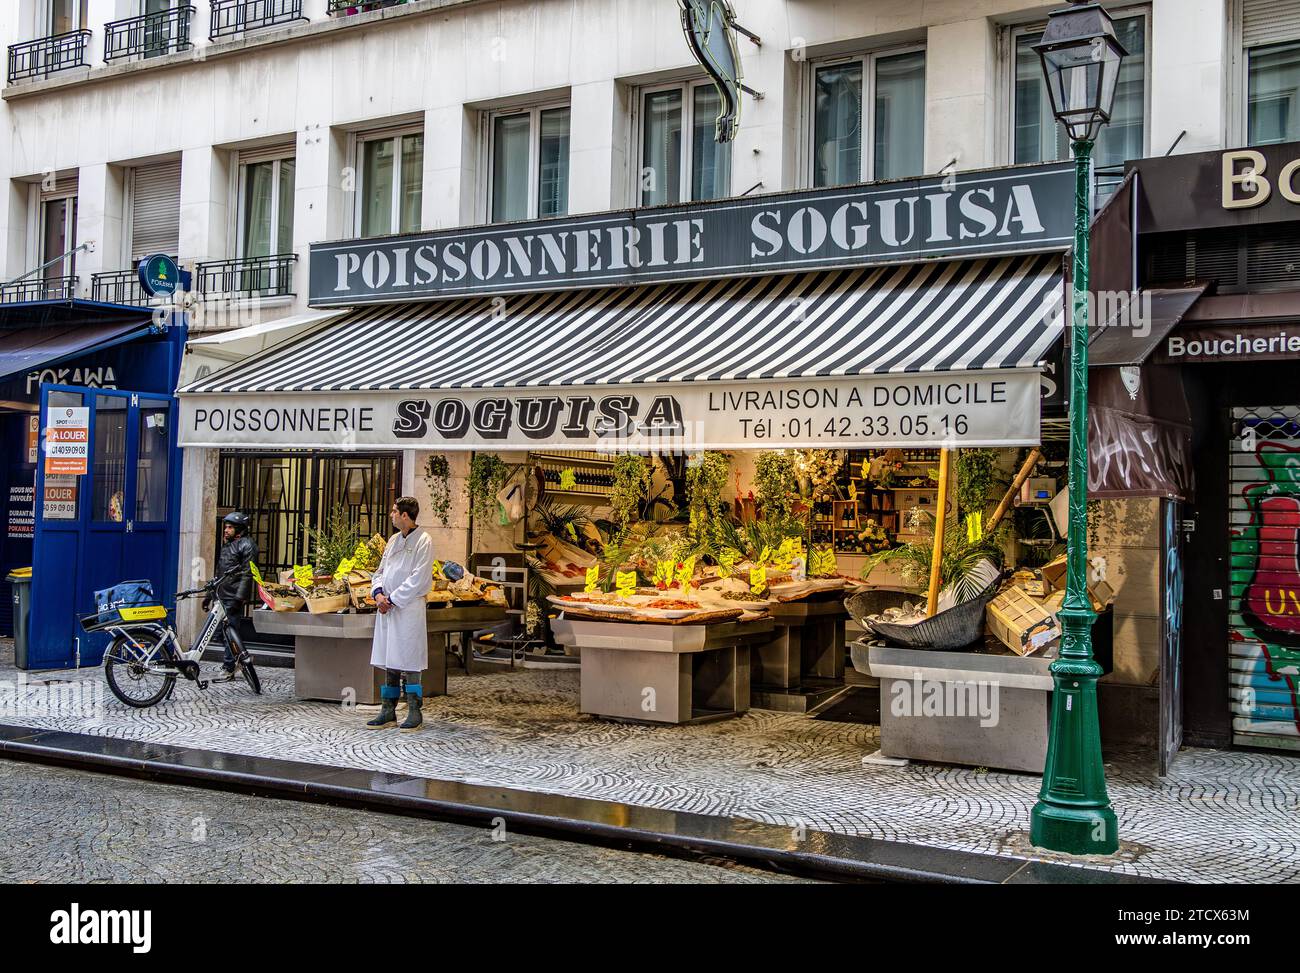 Ein Fischhändler, der vor seinem Laden stand, Poissonnerie Soguisa in der Rue Montorgueil, Paris, Frankreich Stockfoto